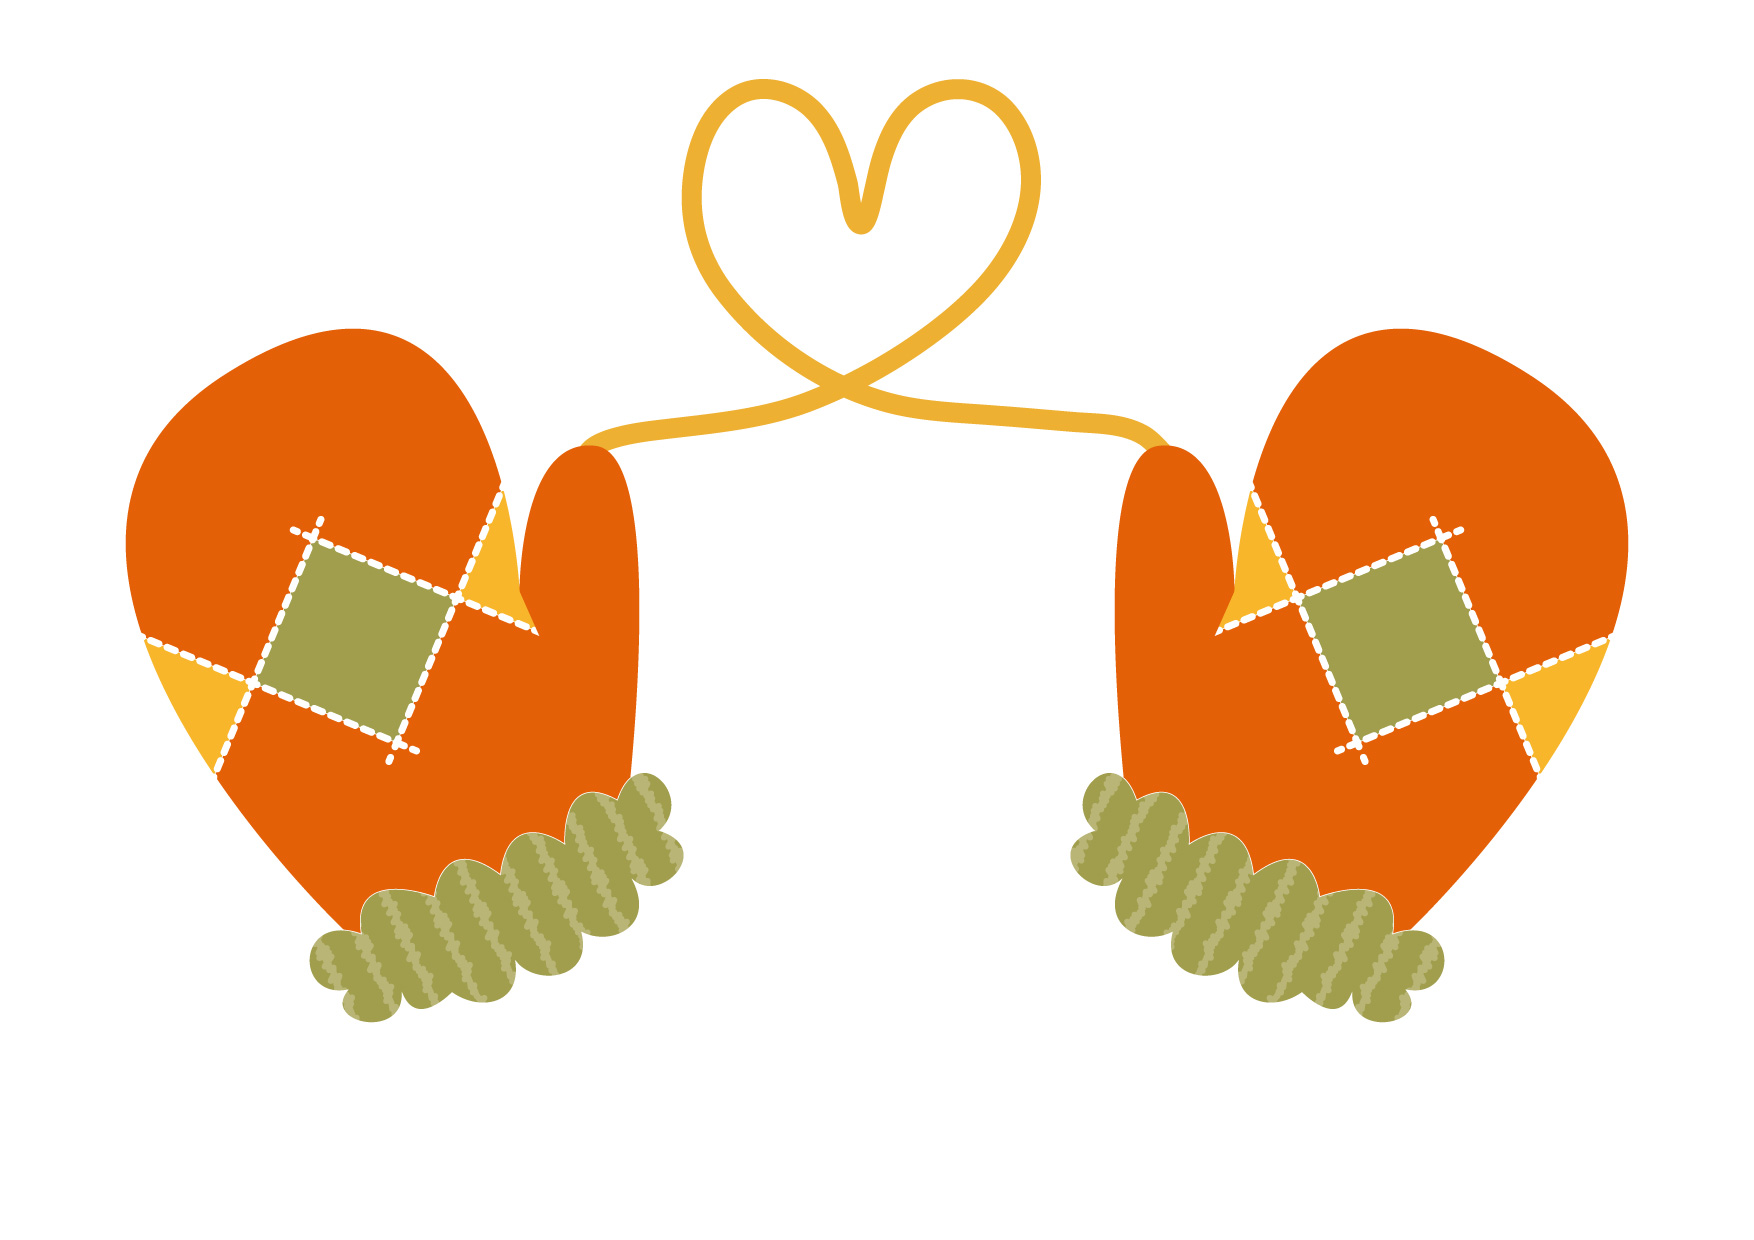 可愛いイラスト無料 手袋 ハート オレンジ色 Free Illustration Gloves Heart Orange 公式 イラスト ダウンロード